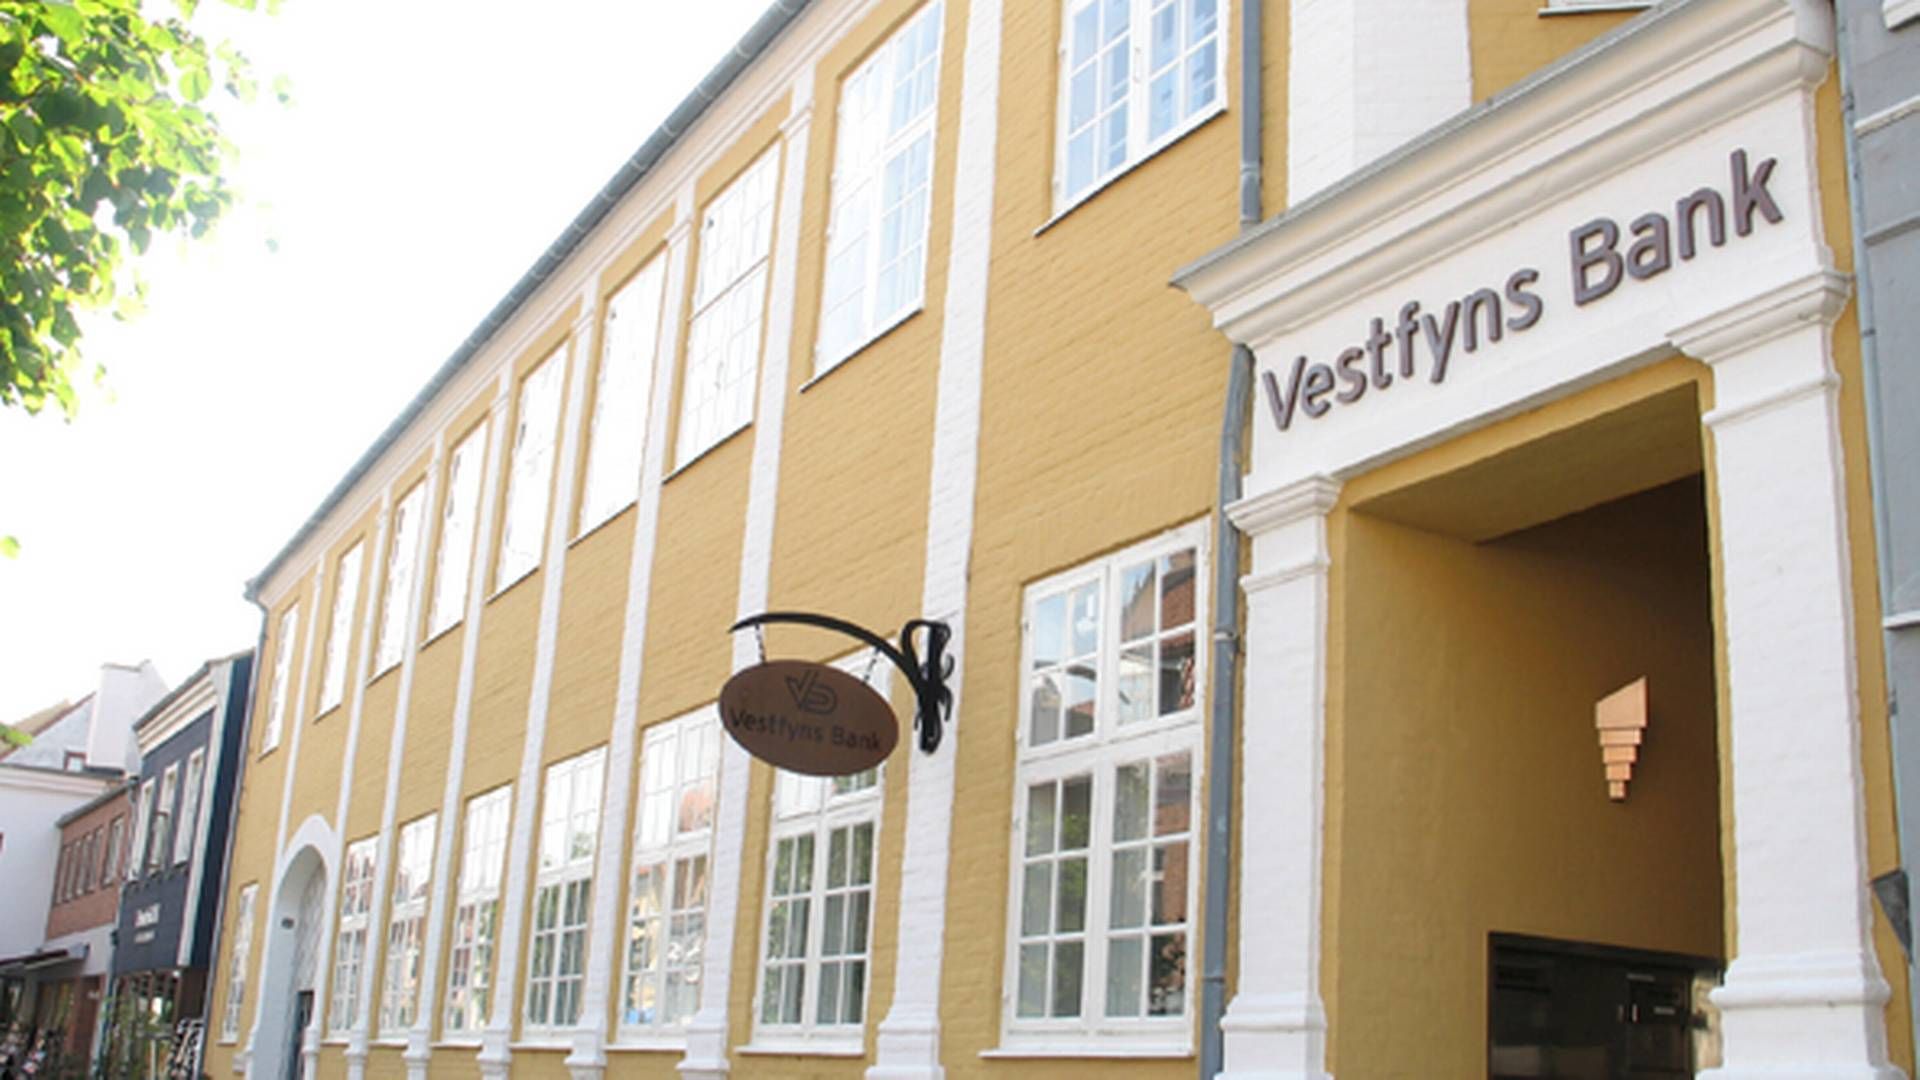 Foto: Vestfyns Bank